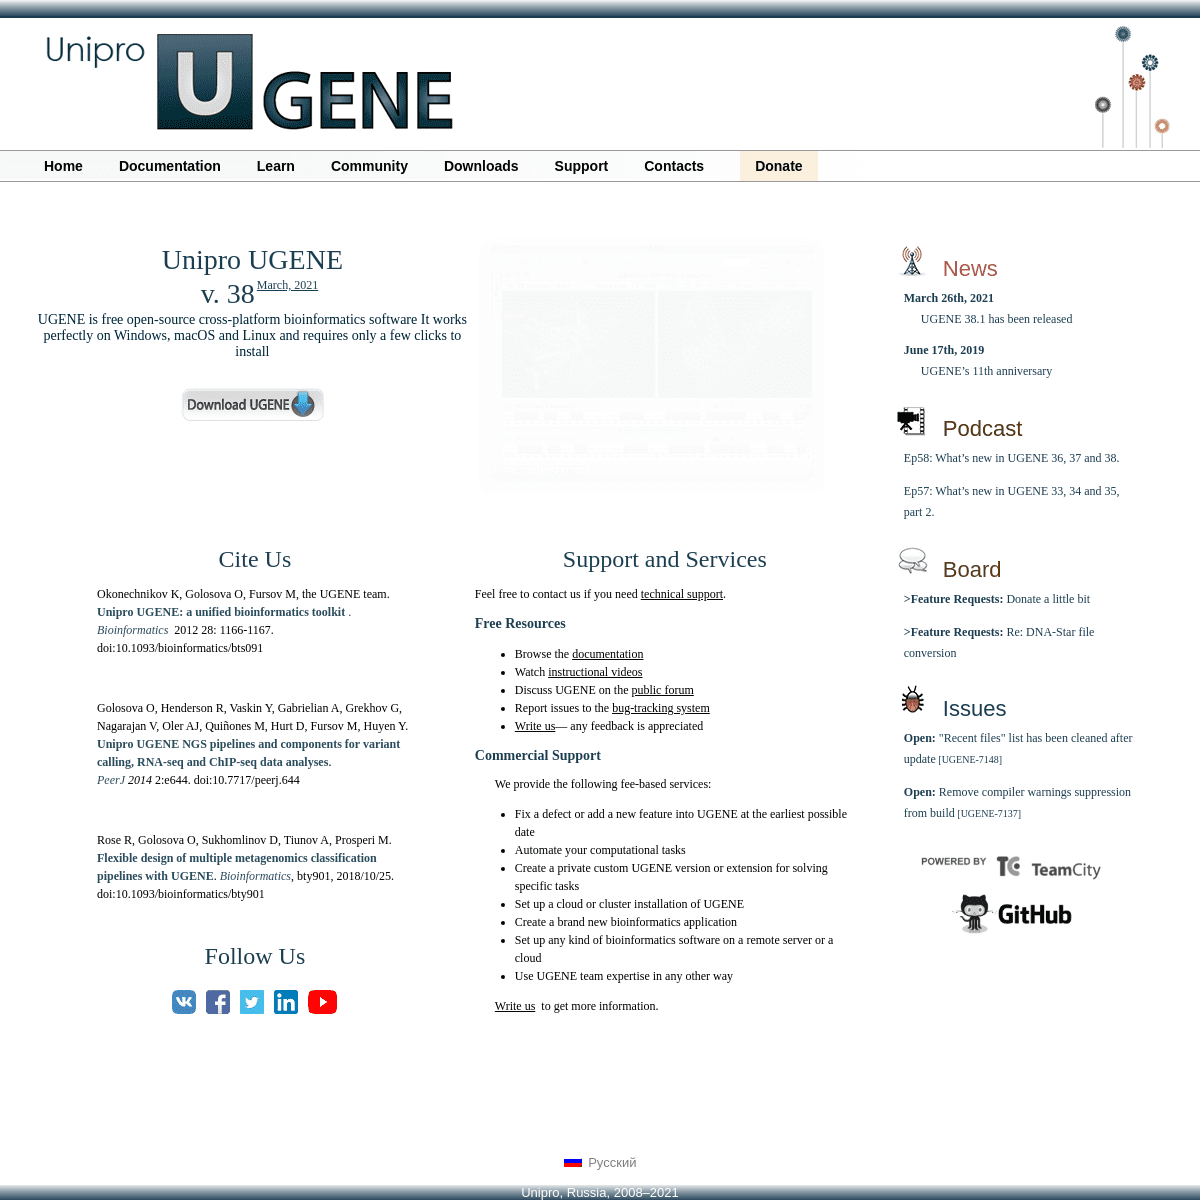 A complete backup of https://ugene.net